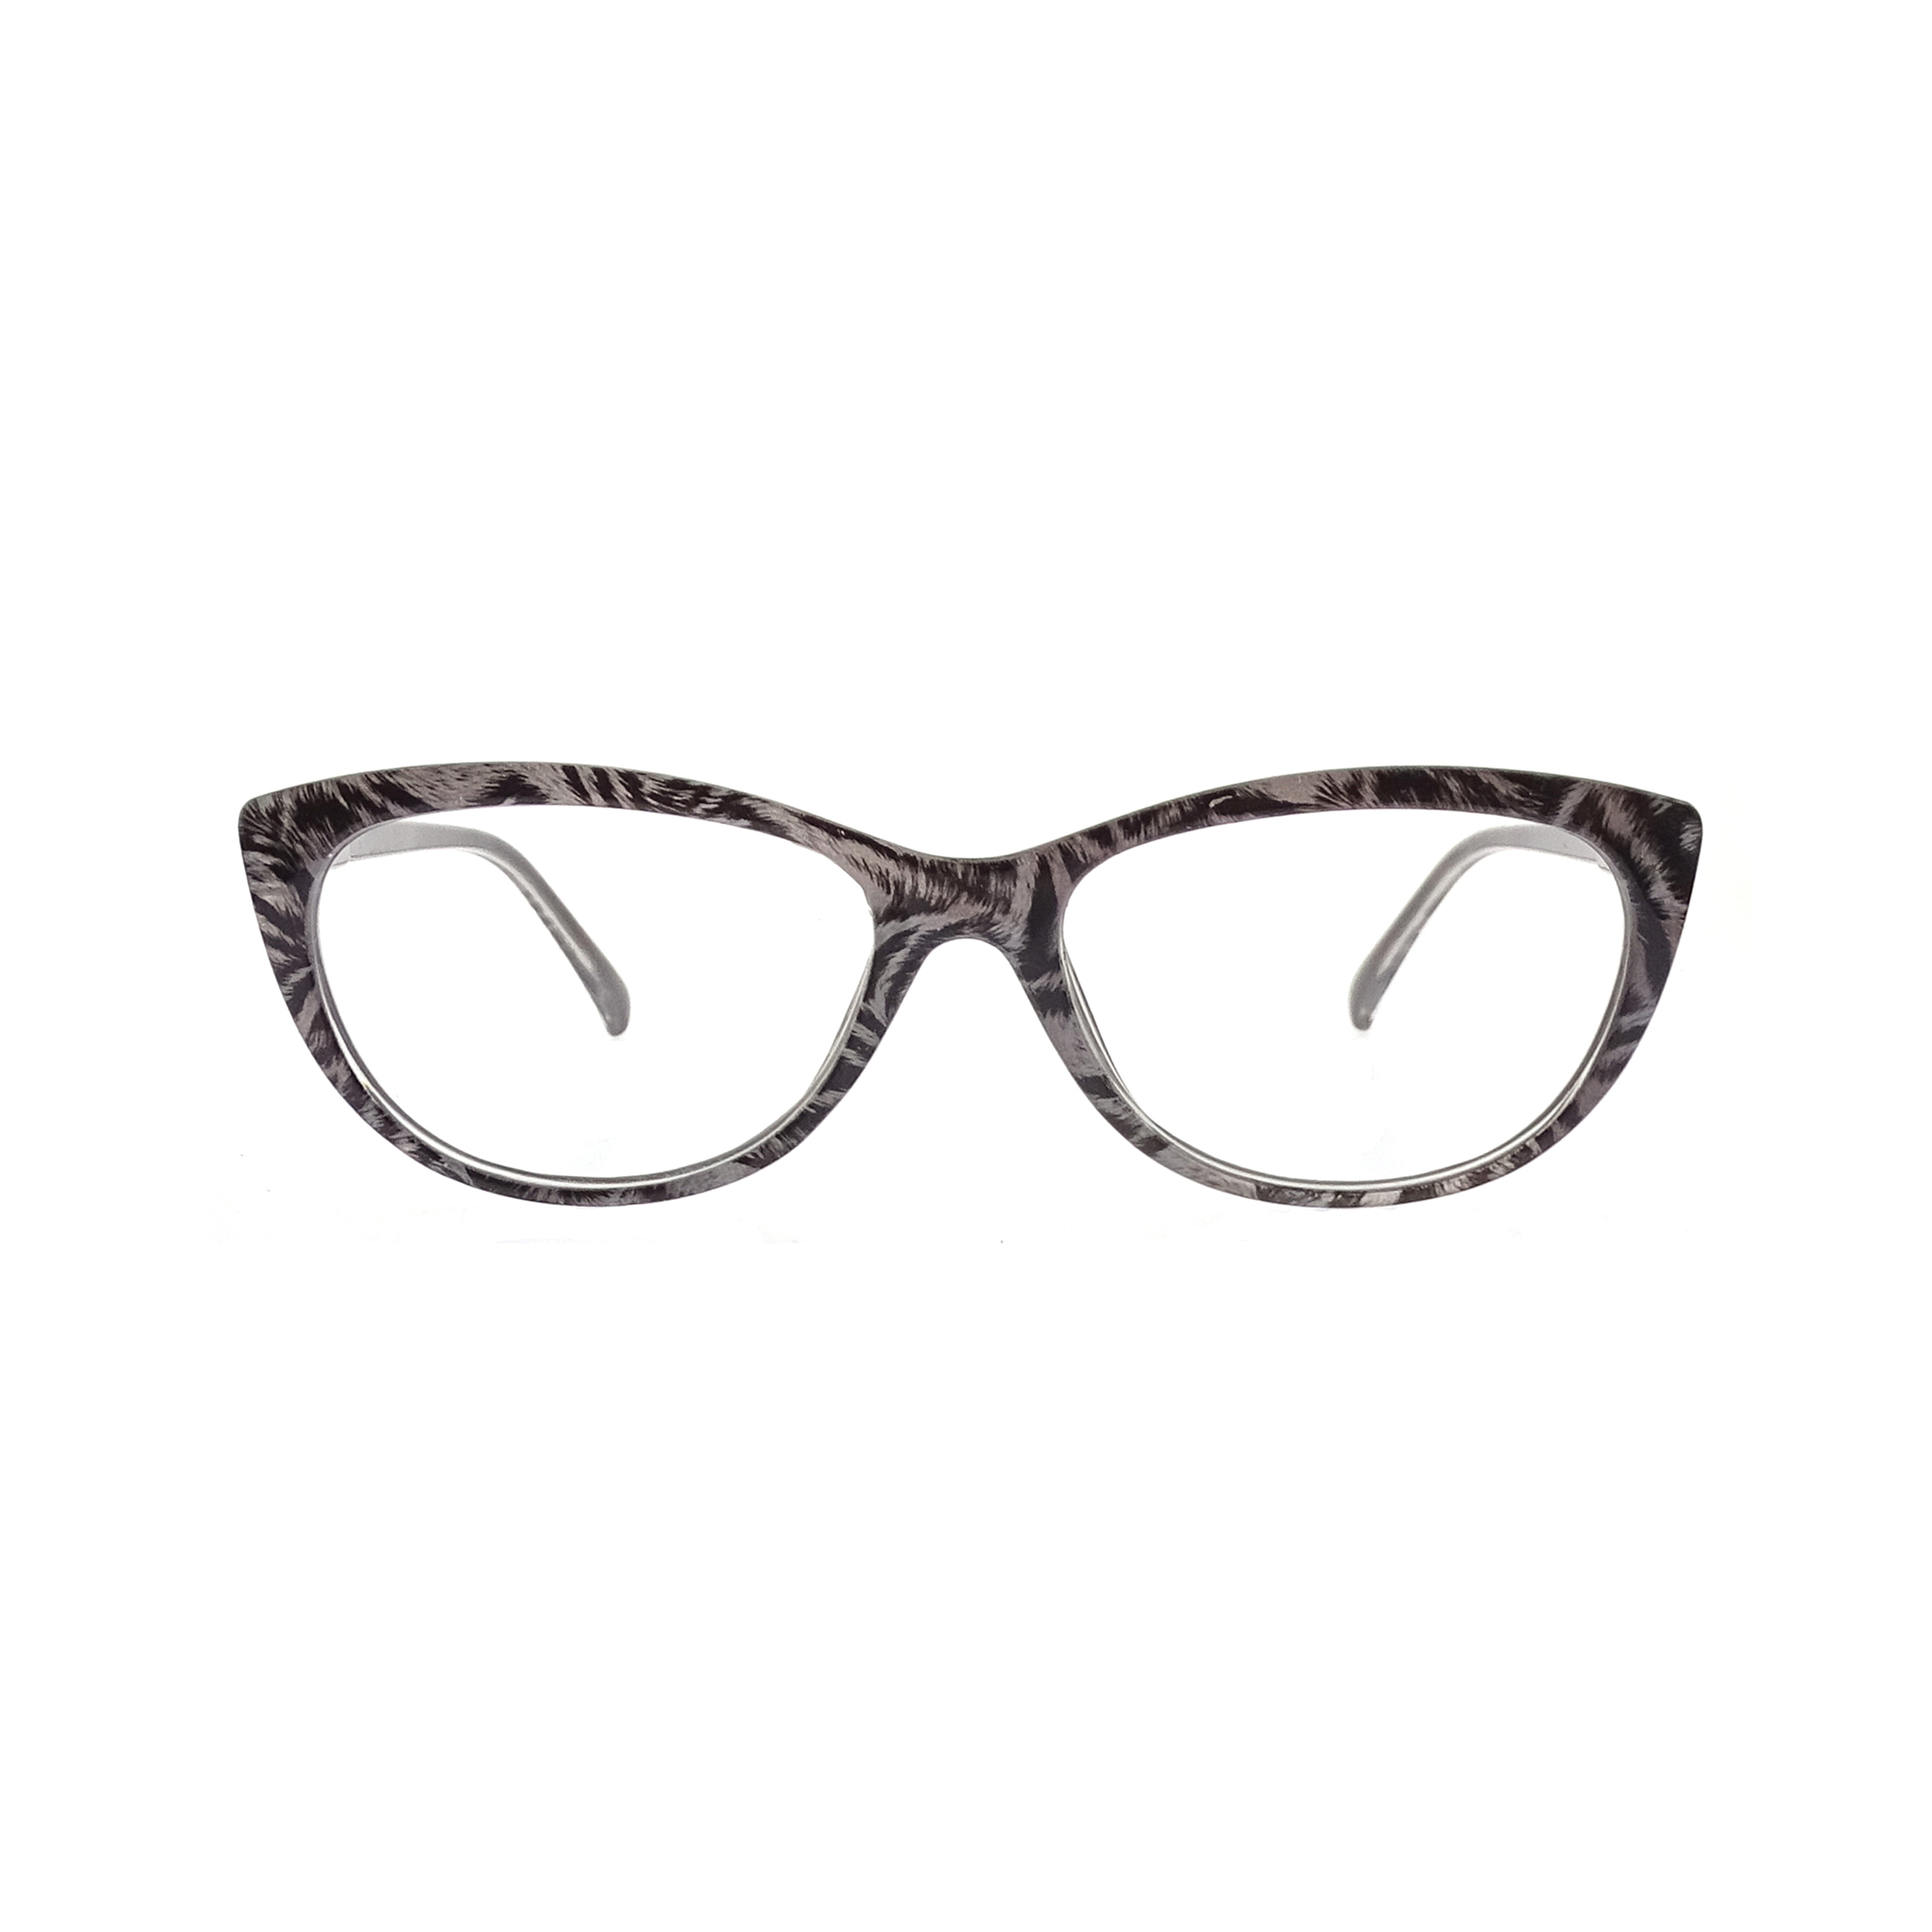 Fashion Cat Eye Reading Glasses For Women LR-P6137 